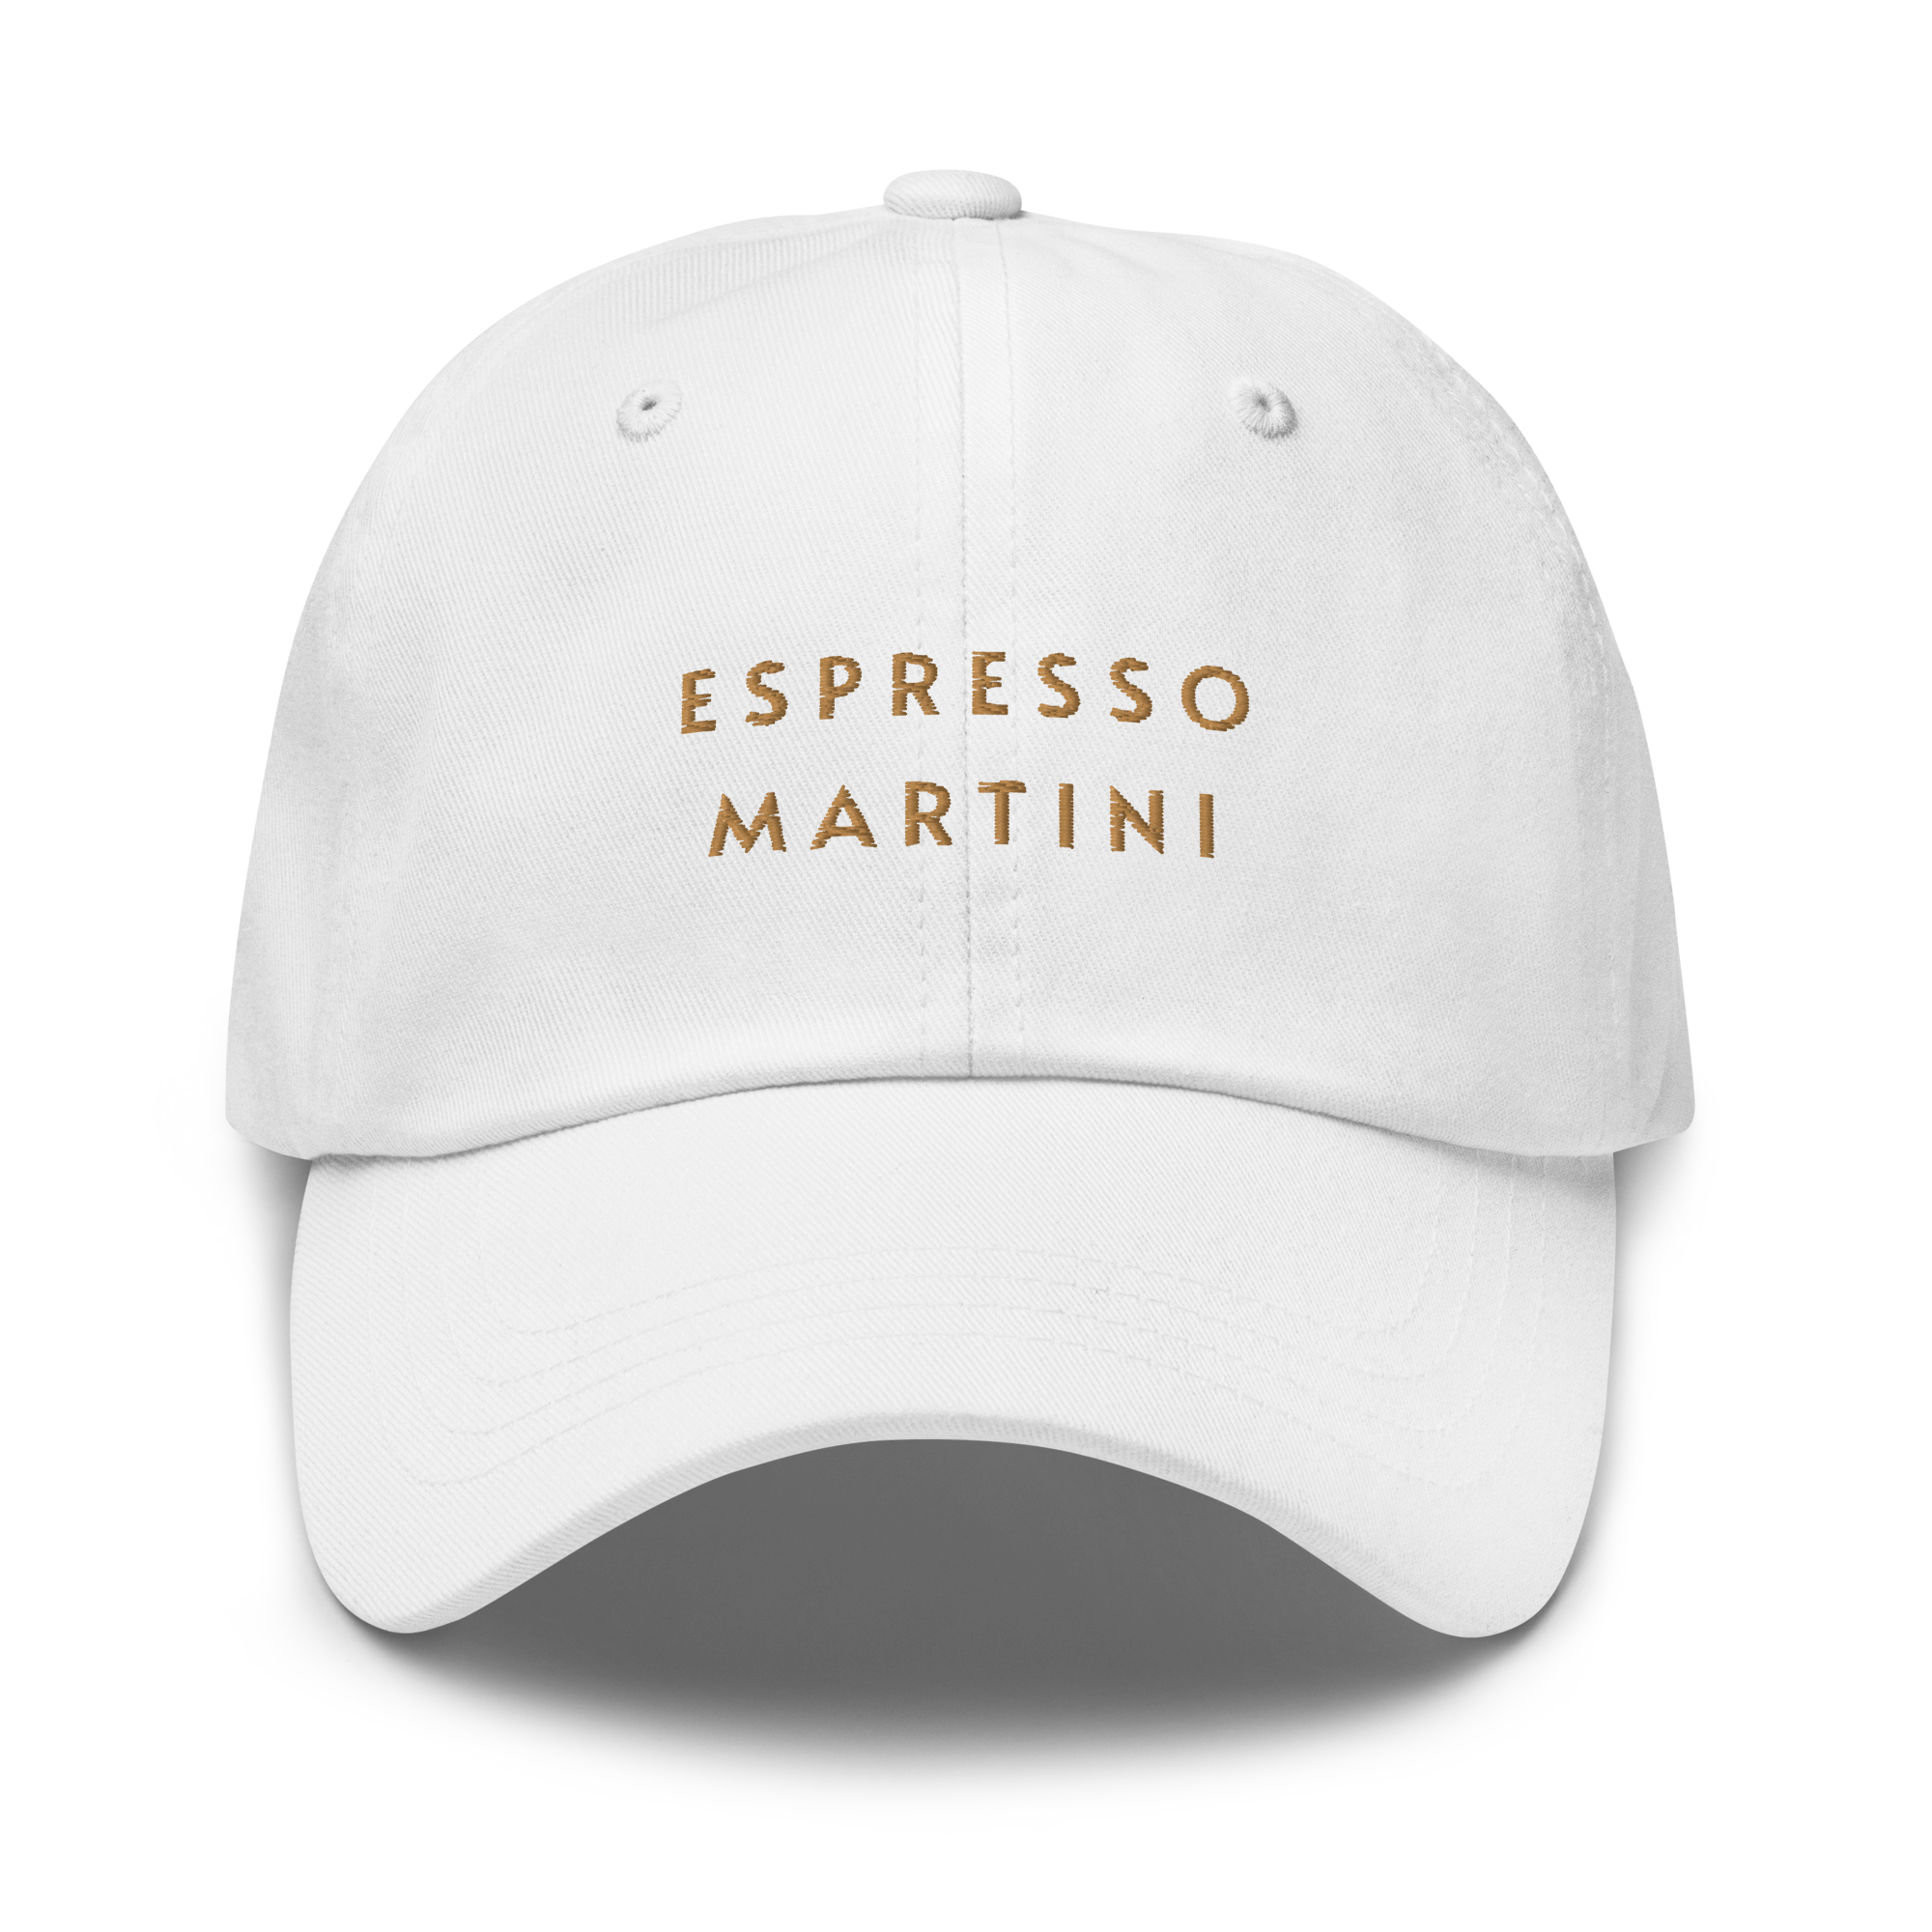 Espresso Martini Cap